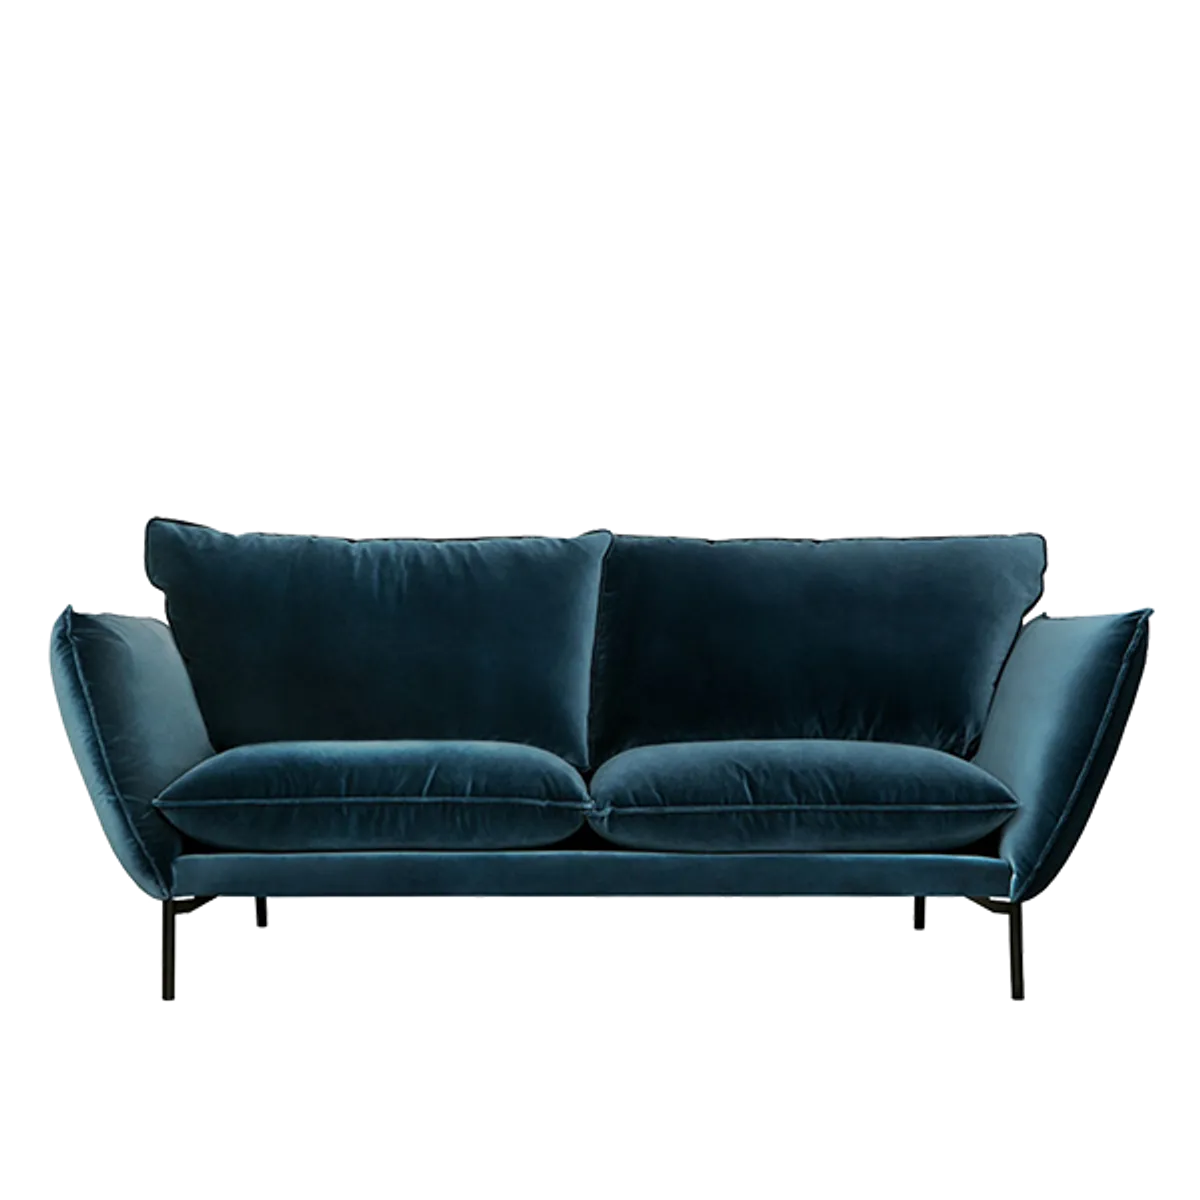 Web Beagle Sofa 3 Seater Img